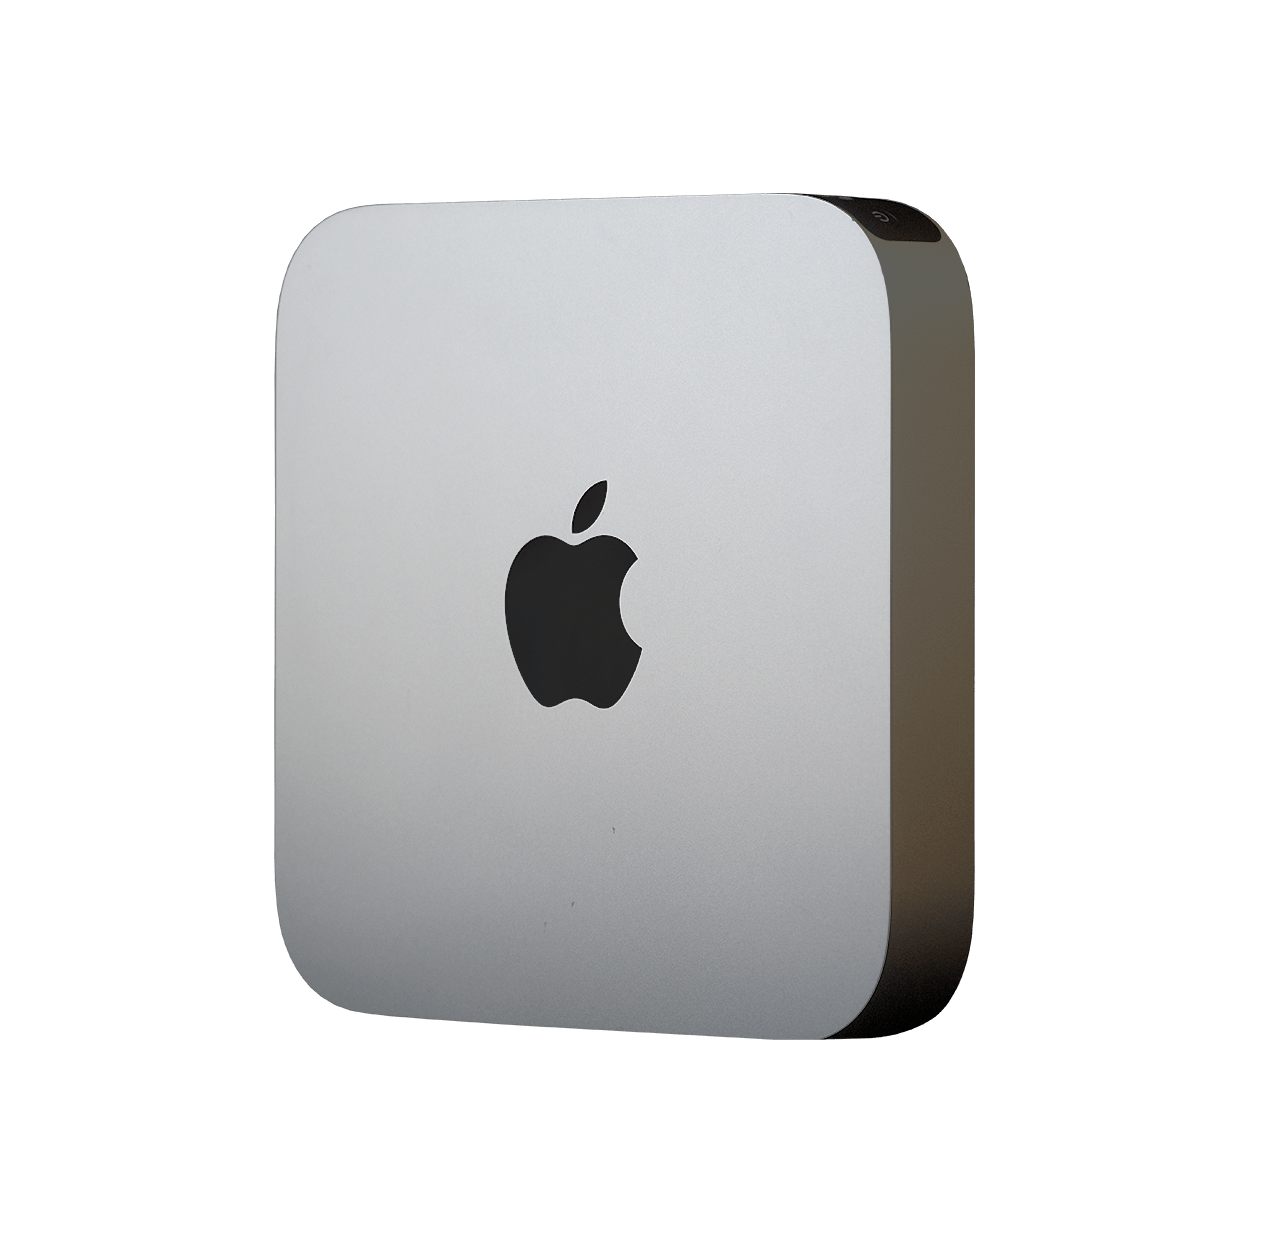 【くことが】 Apple Mac mini 2014 Core i7/16GB 上位モデル はないと